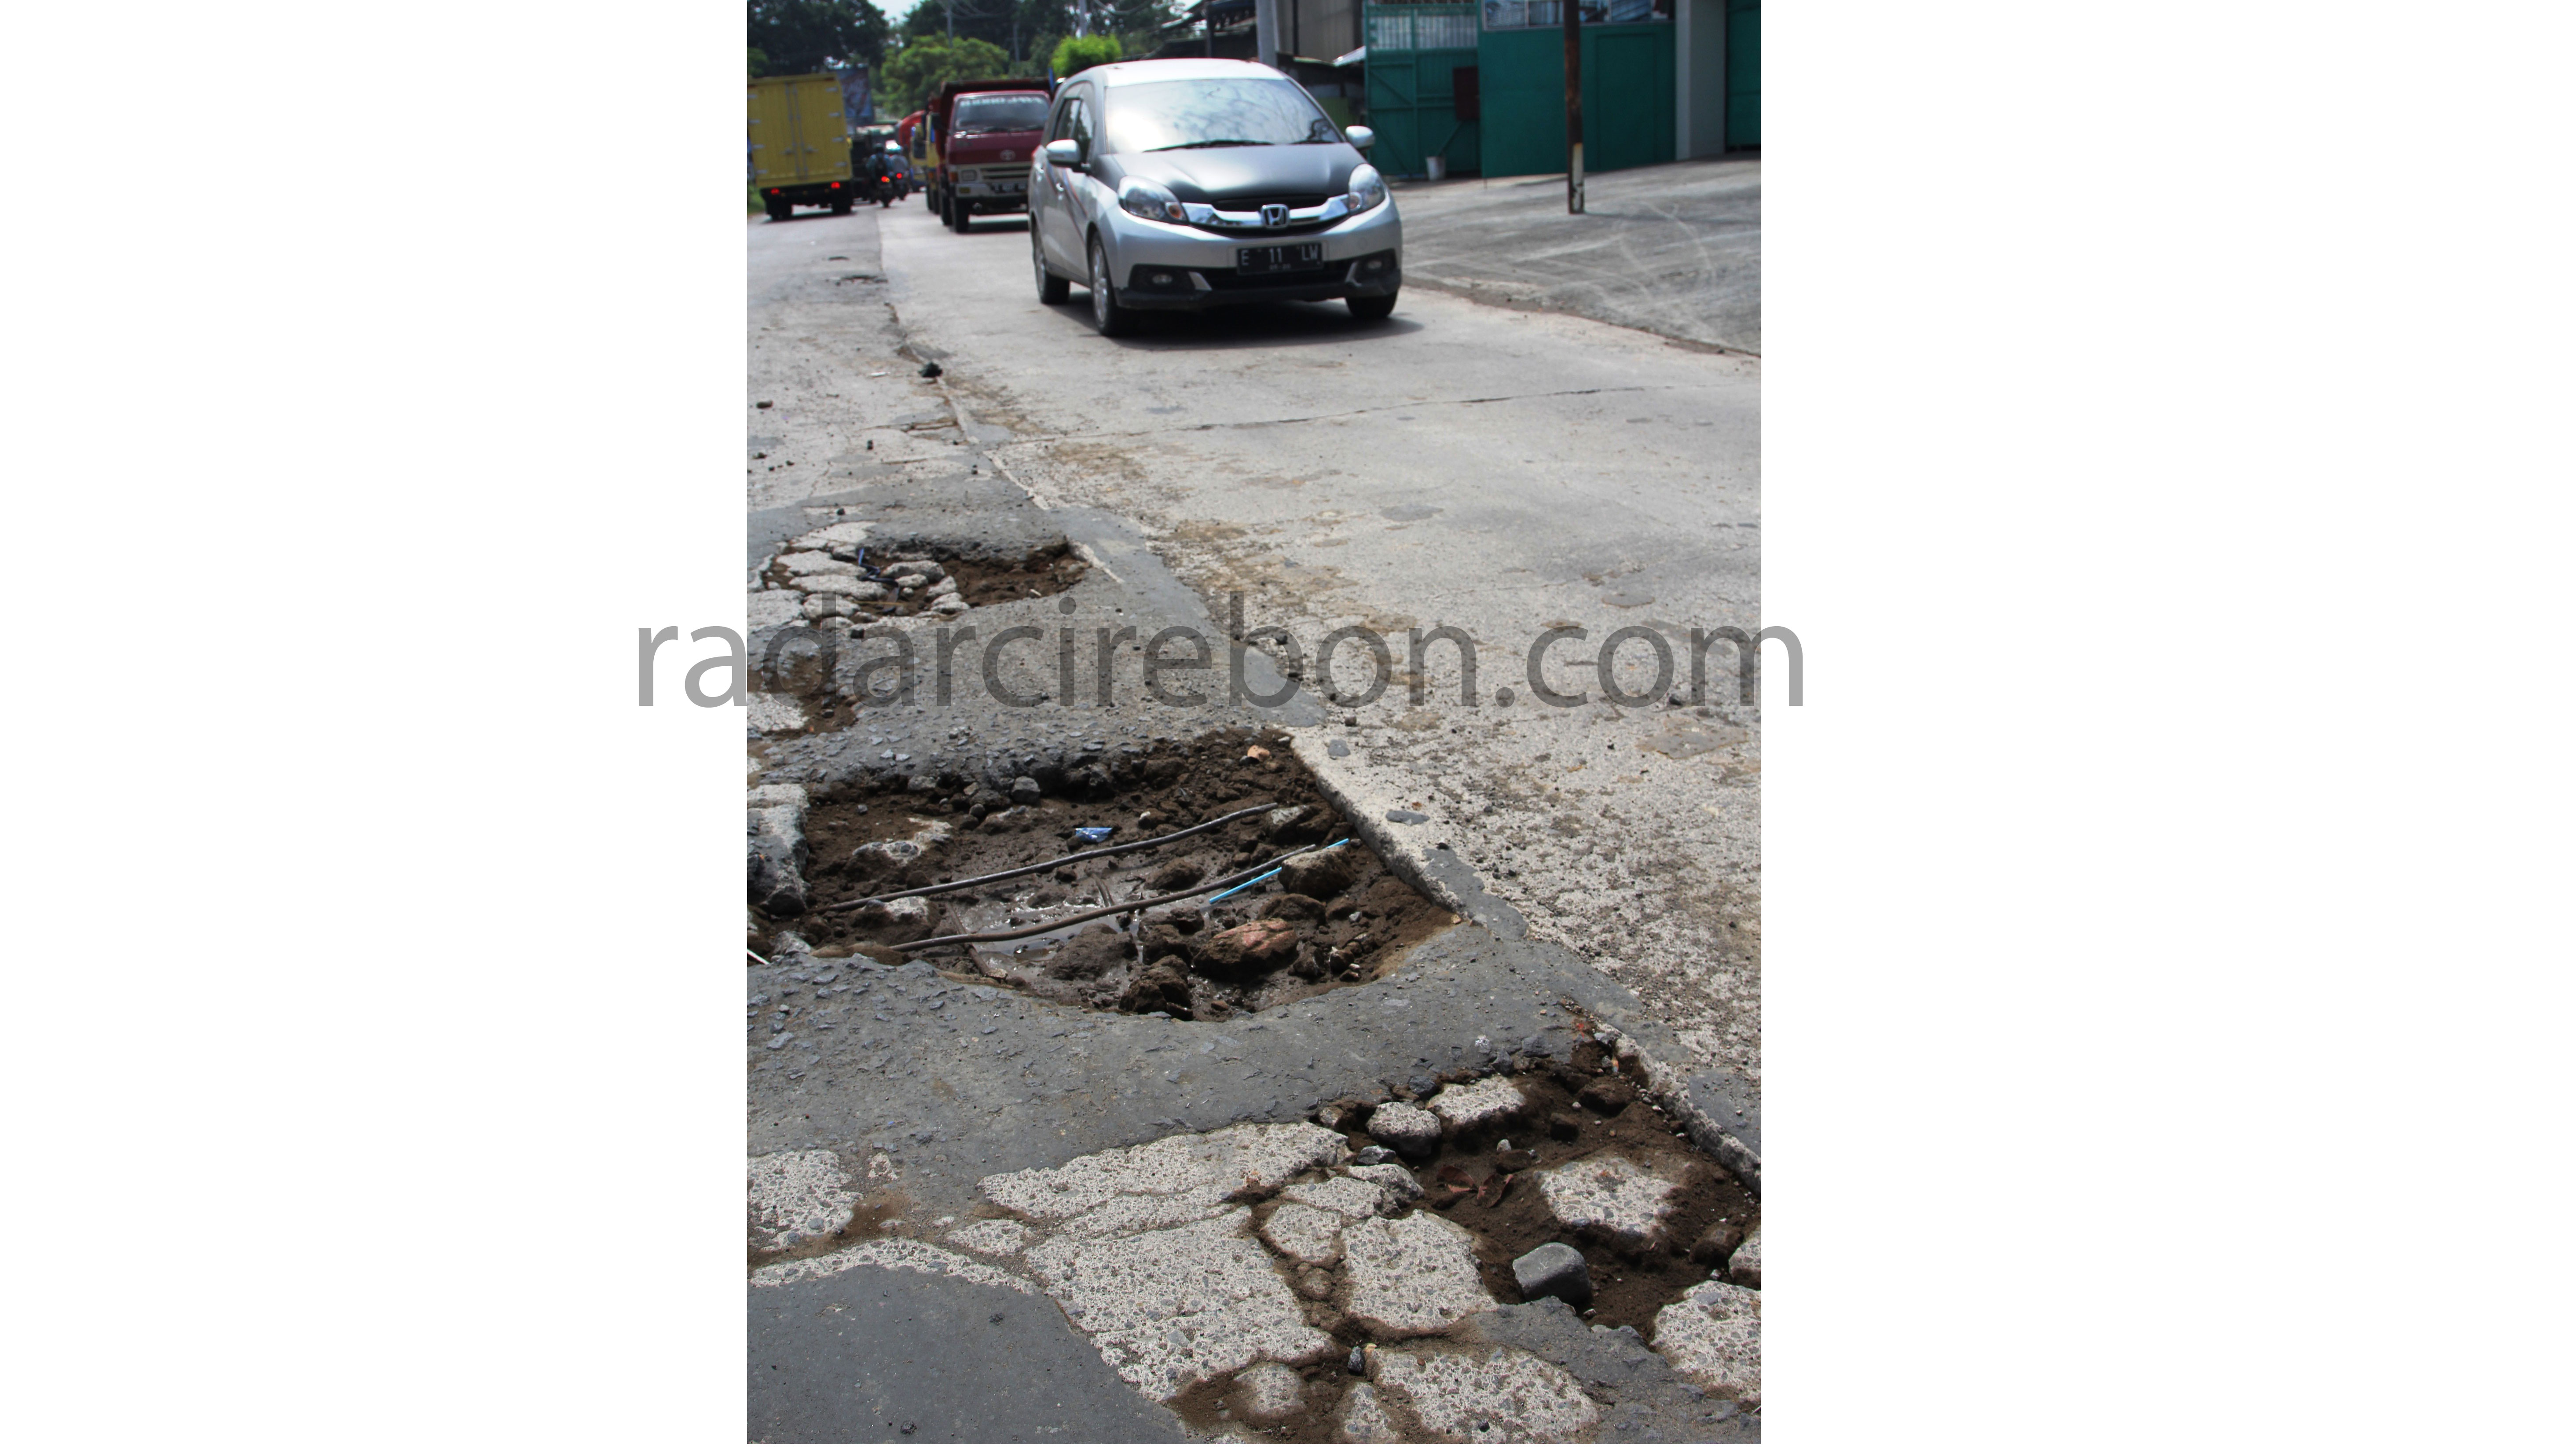 Kerusakan Jalan Dominan di Wilayah Selatan, Anggaran Rp75 Juta, Termasuk Pemeliharaan Jalan Beton